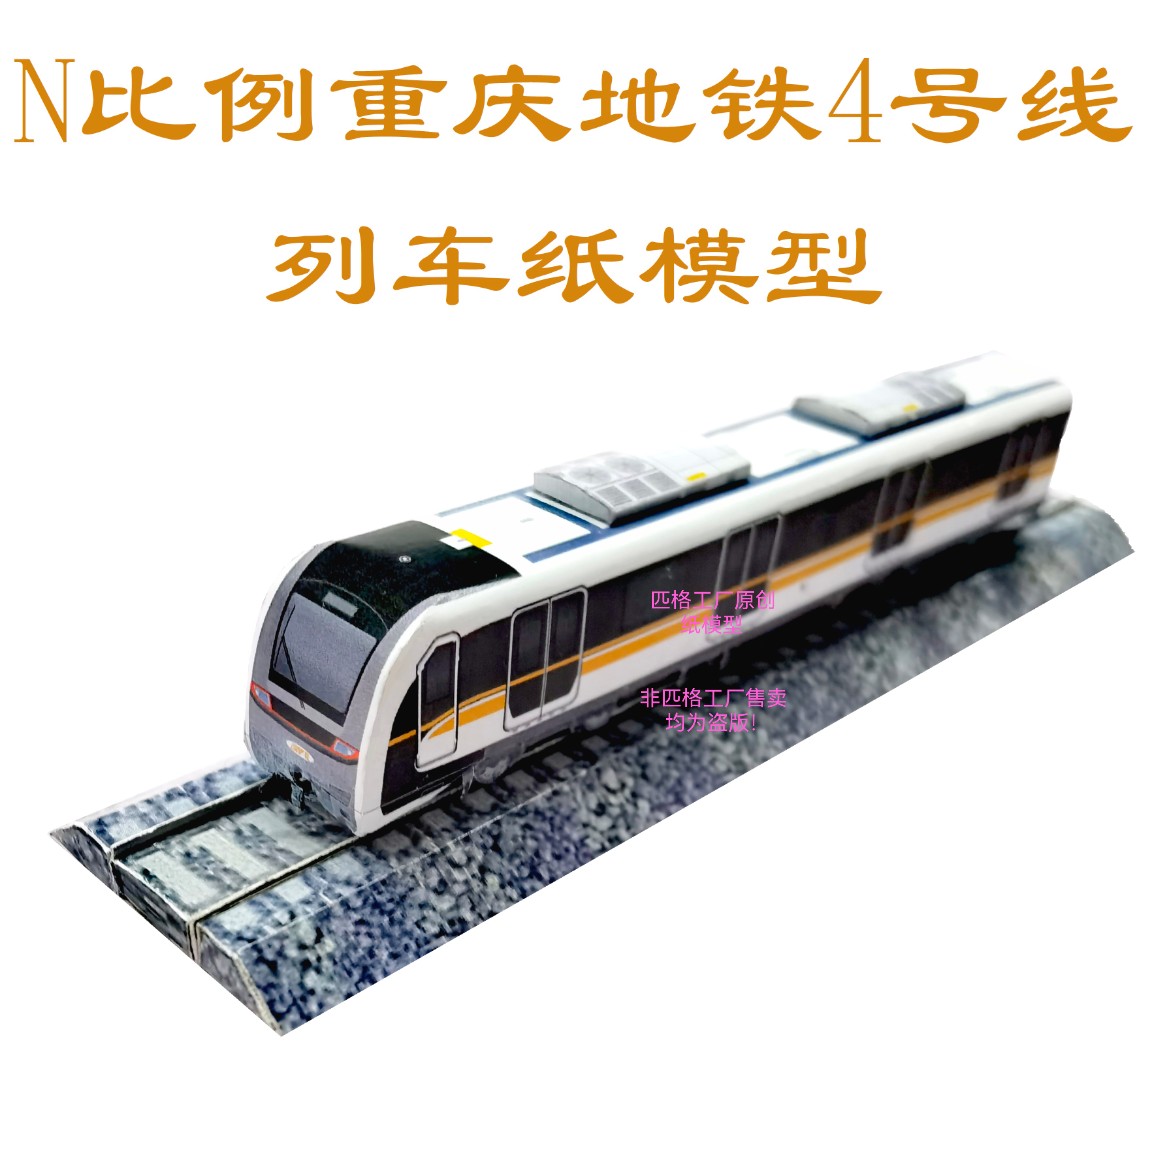 匹格工厂N比例重庆地铁4号线列车模型3D纸模DIY火车高铁地铁模型